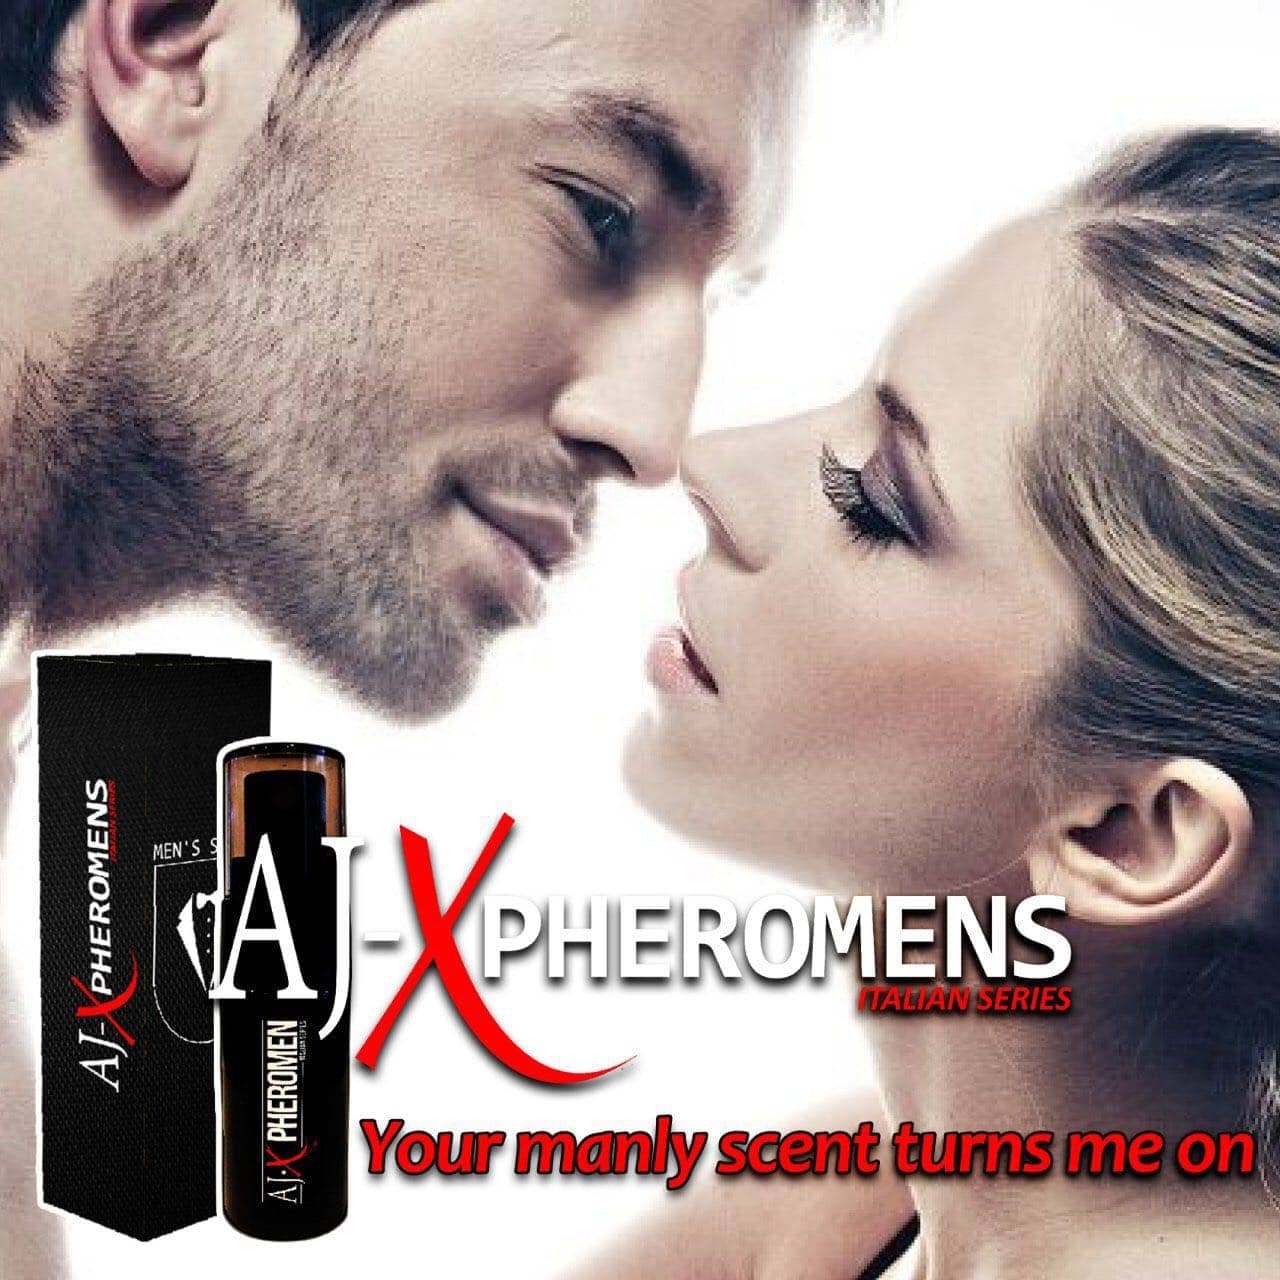 ajx pheromens